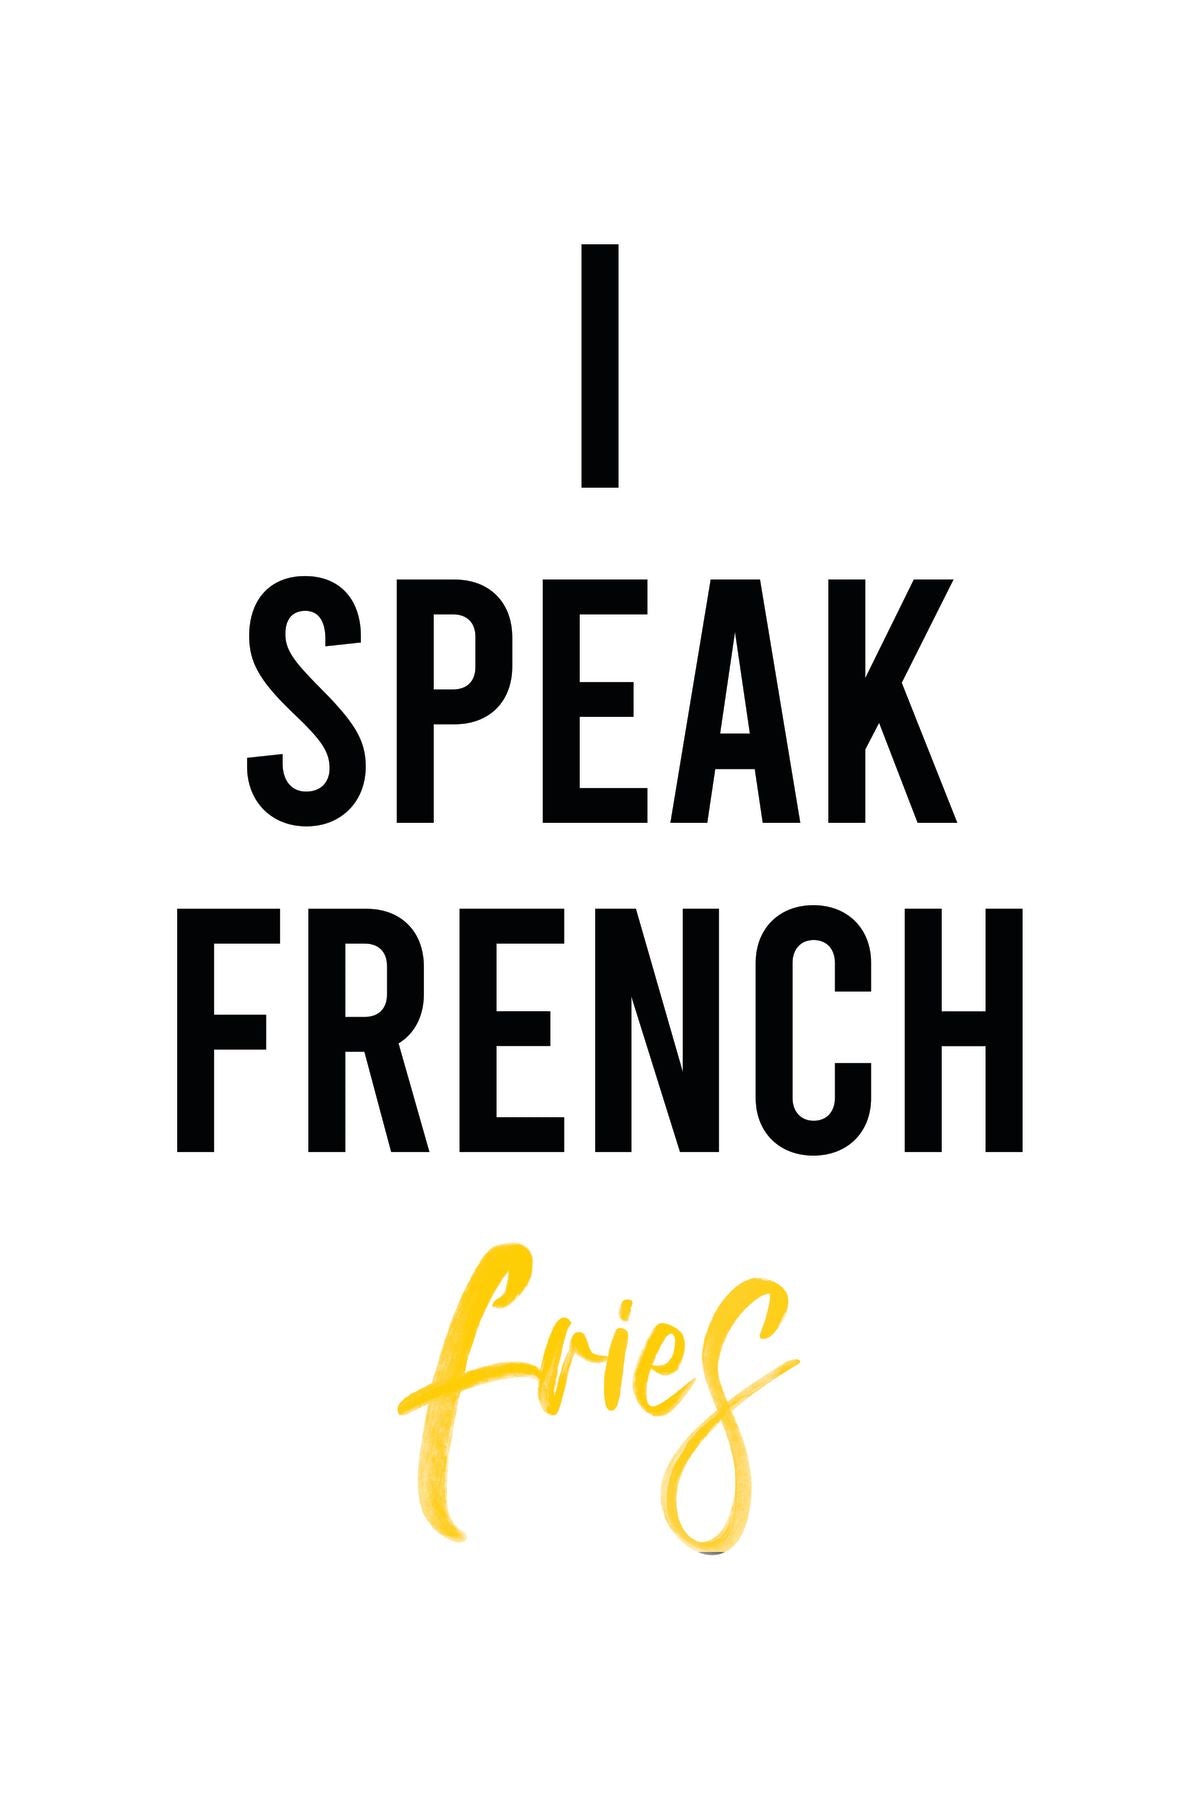 I Speak French Fries